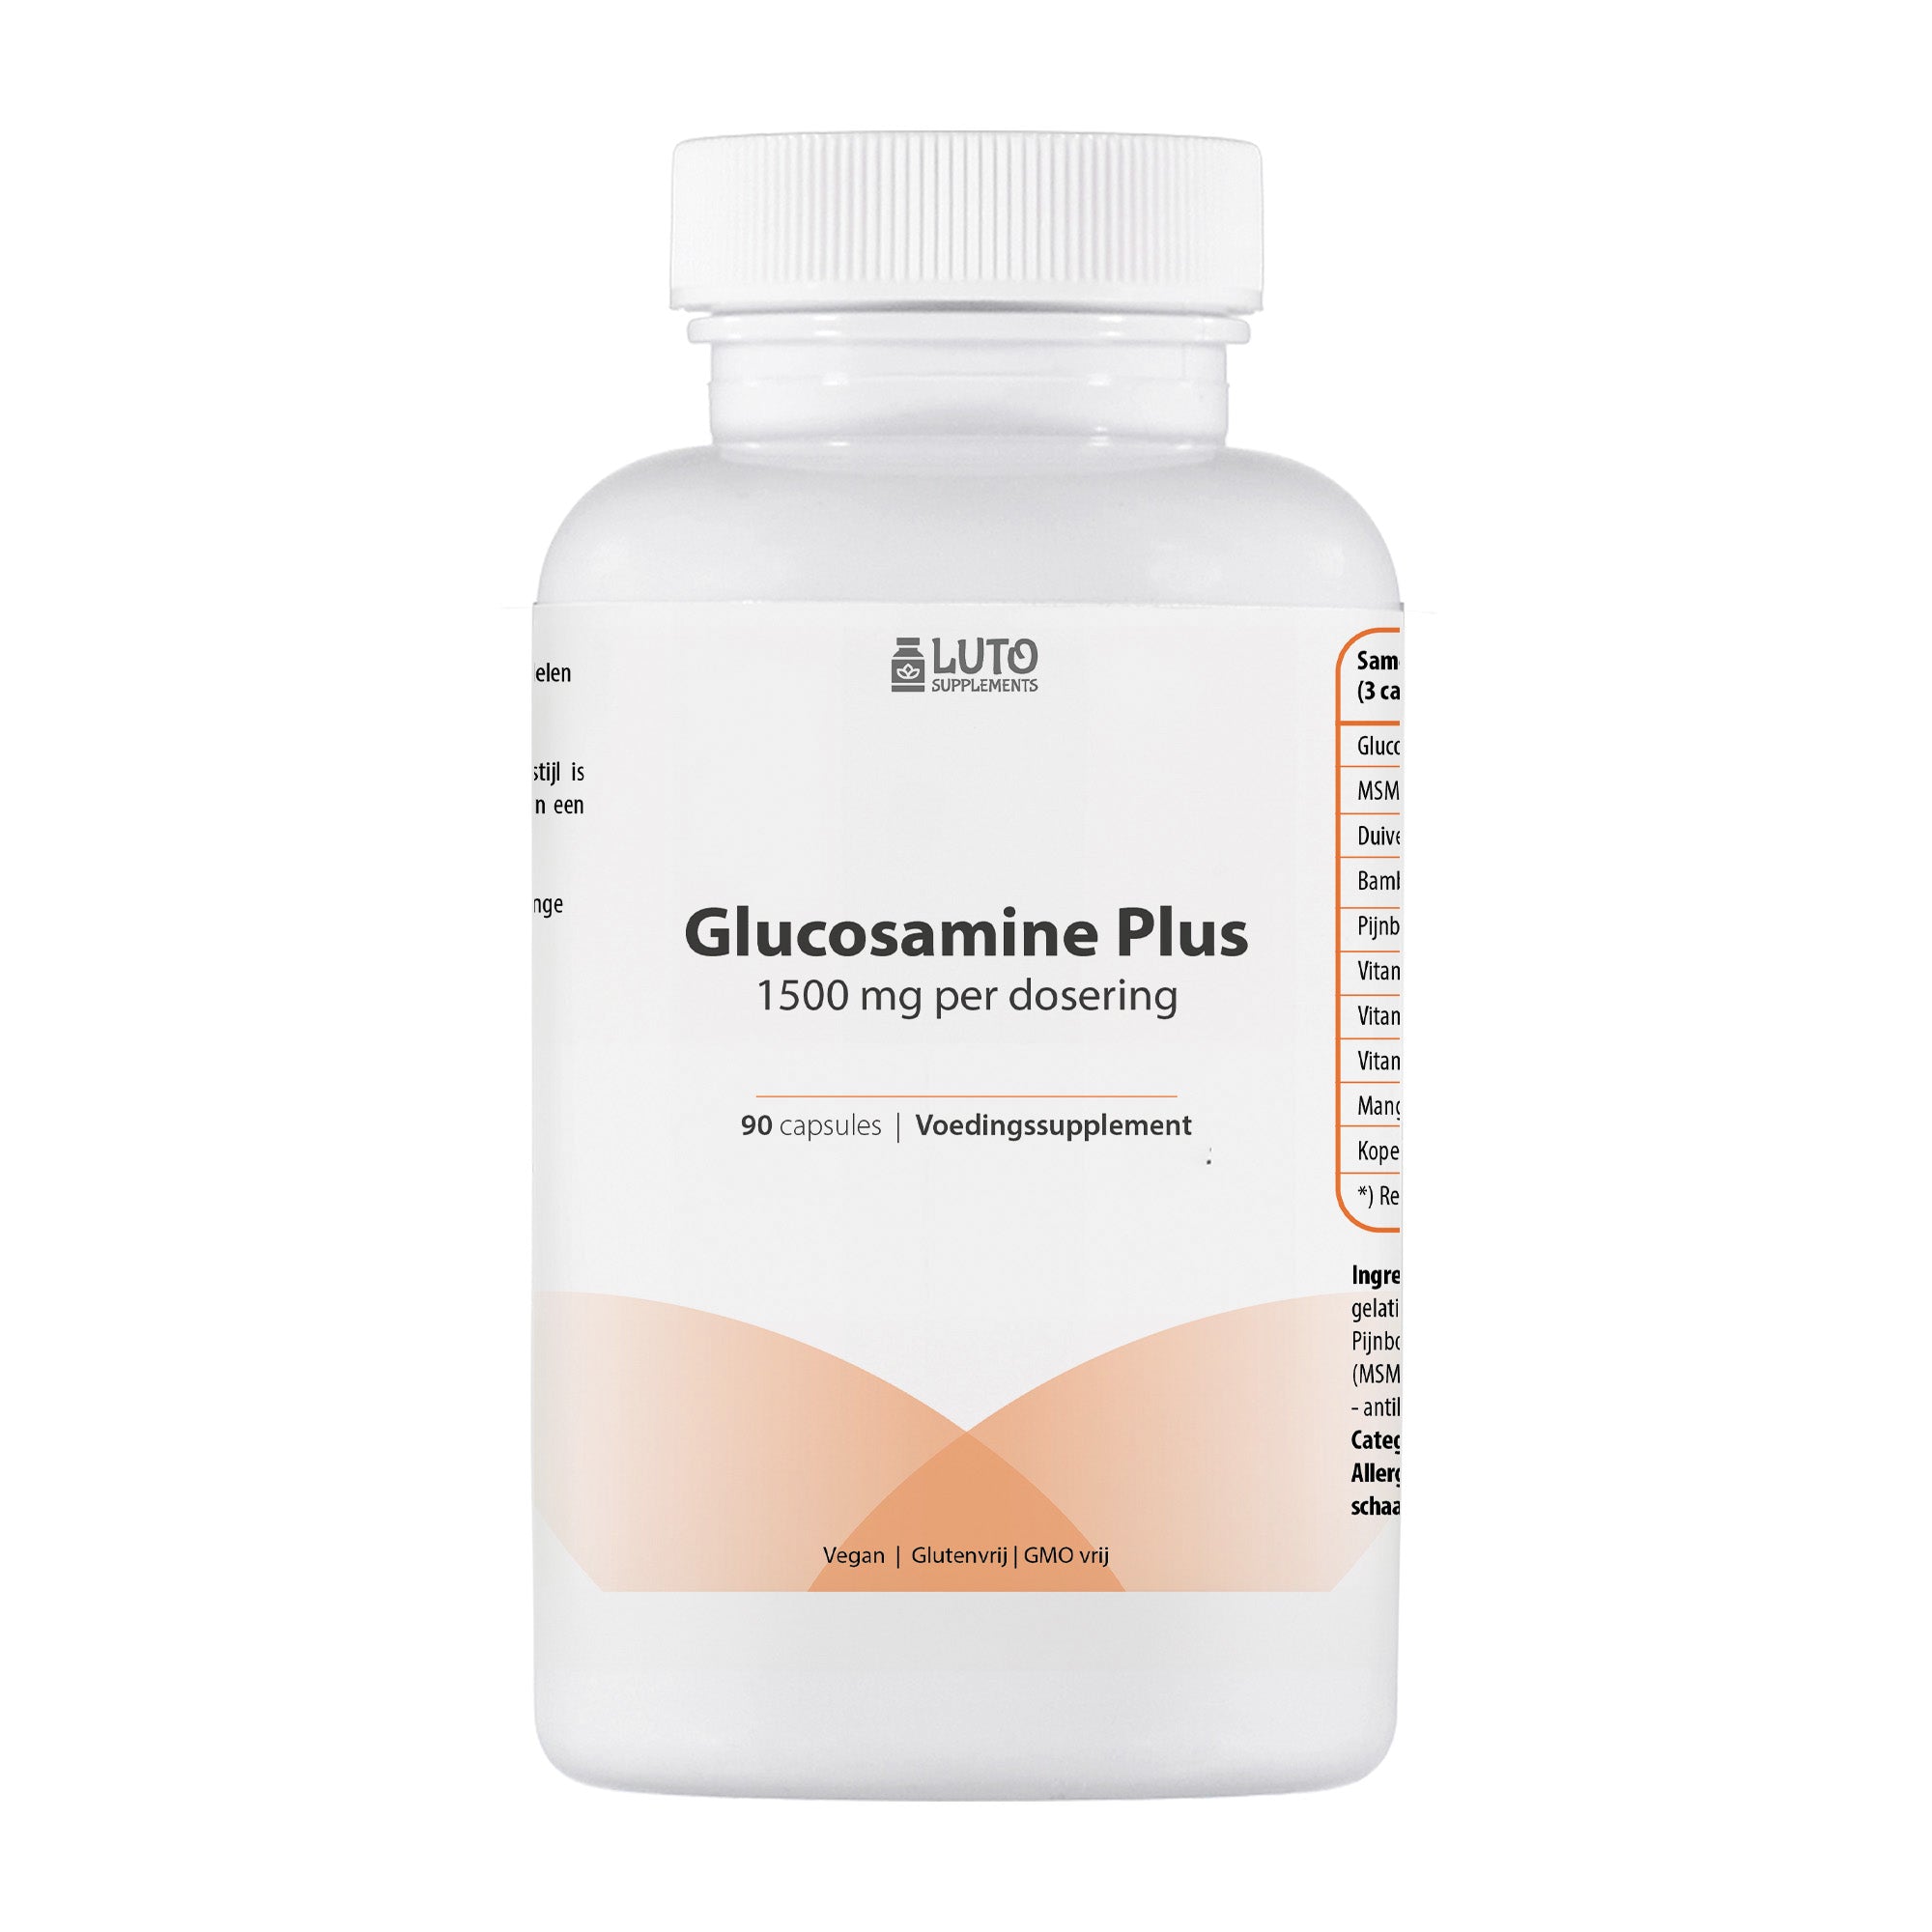 Luto Supplements - Glucosamine Plus - 1500 mg Glucosamine per dagdosering - Met mangaan voor de opbouw van kraakbeen* - Met vitamine D en K ter ondersteuning van de botten - 90 capsules